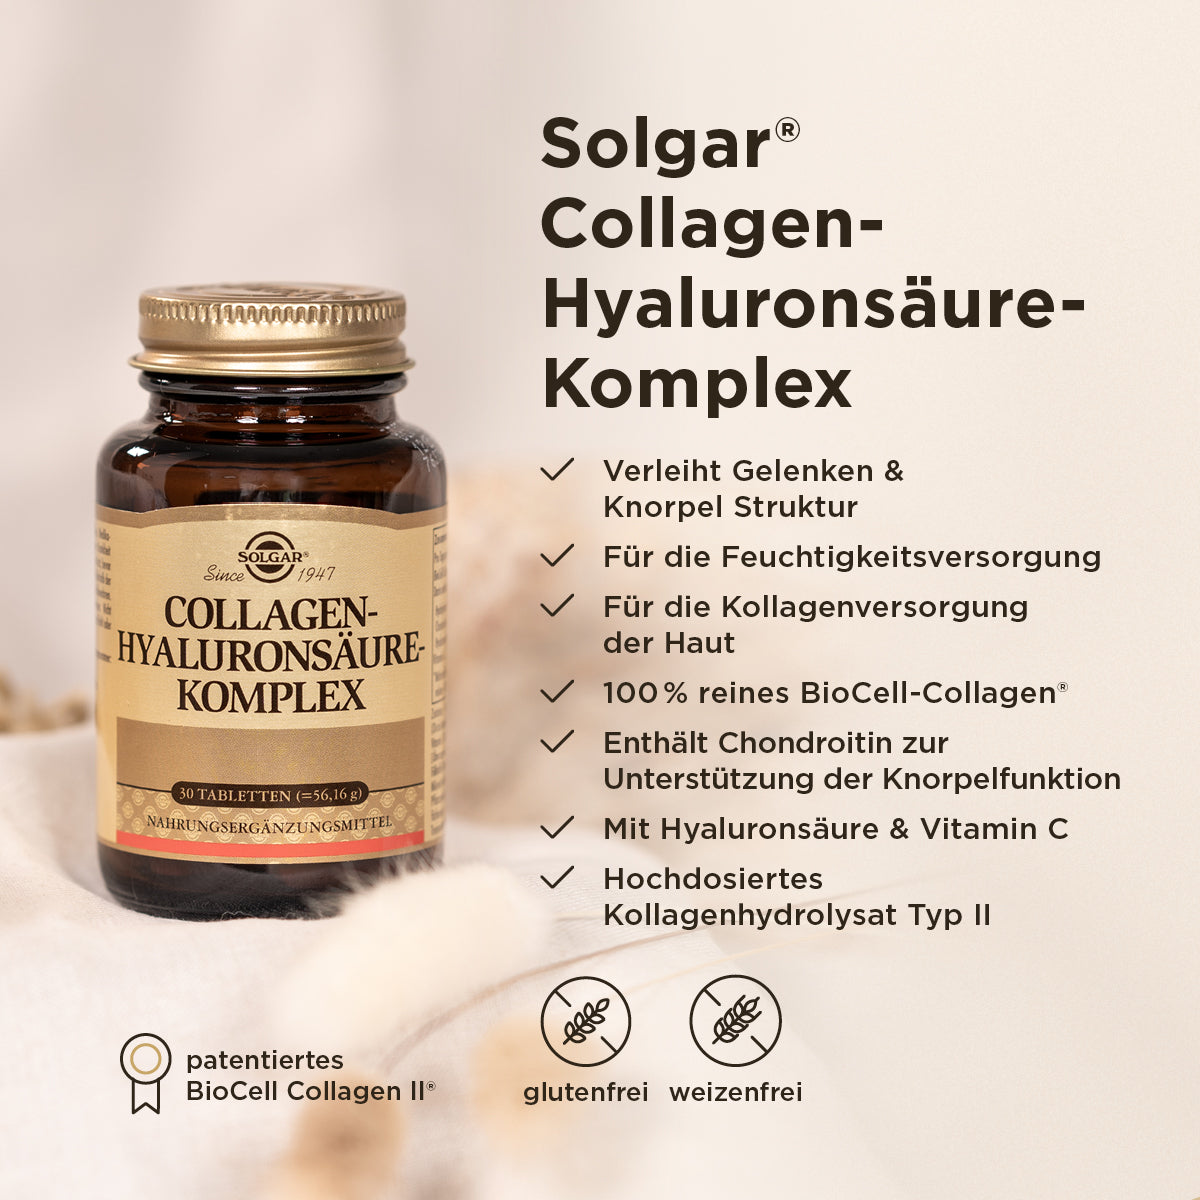 Grafik der Benefits des Solgar Collagen Komplexes